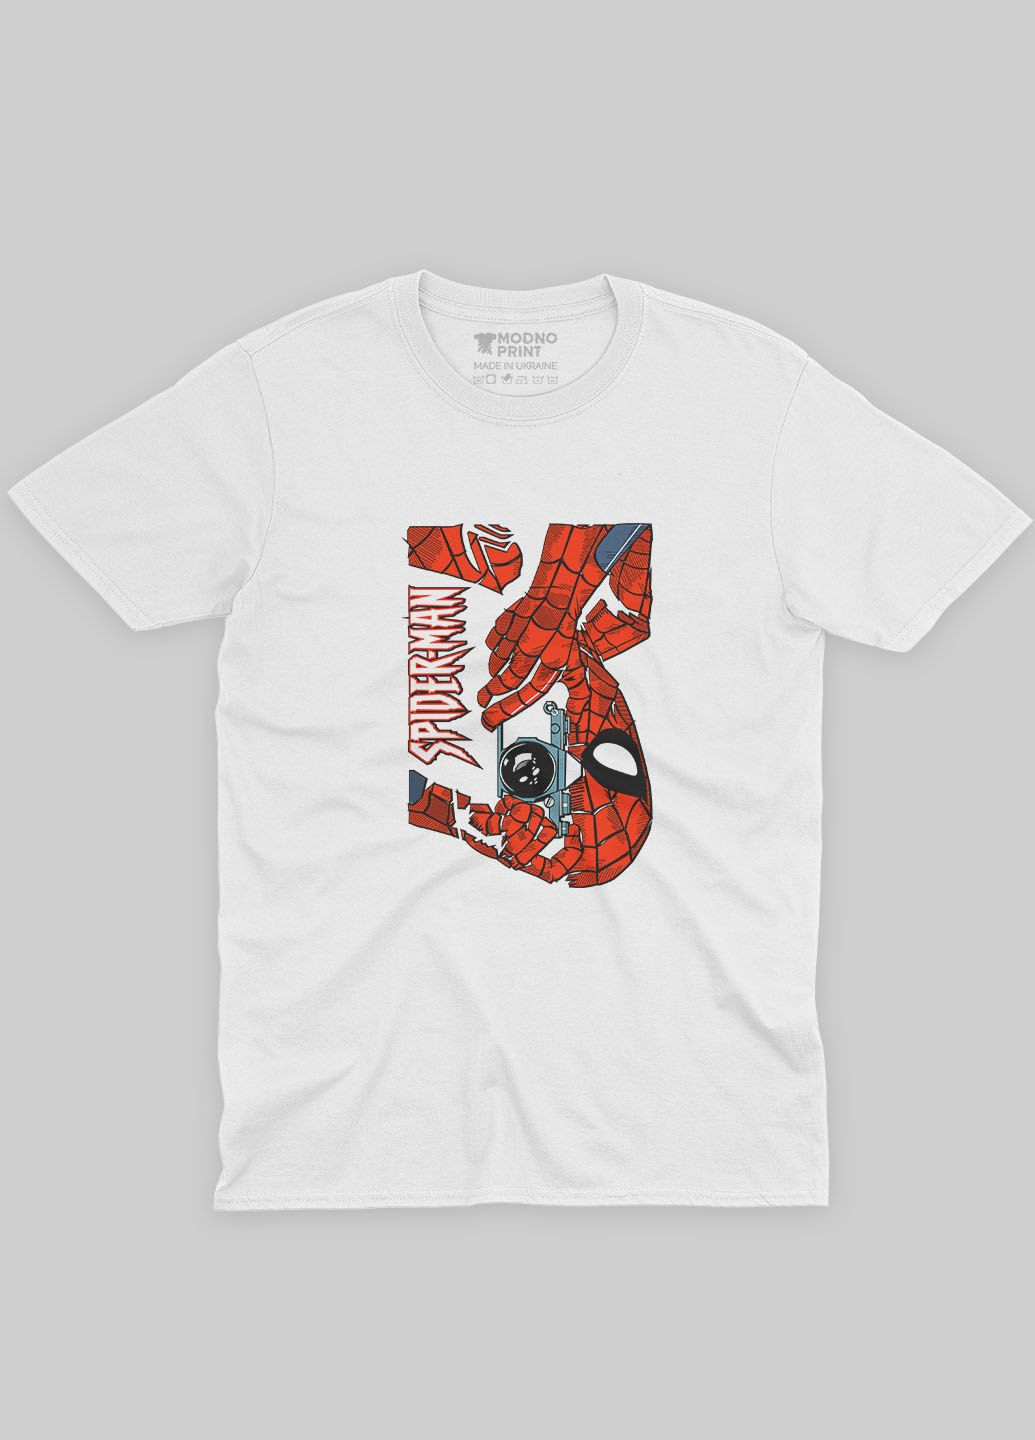 Біла демісезонна футболка для хлопчика з принтом супергероя - людина-павук (ts001-1-whi-006-014-042-b) Modno